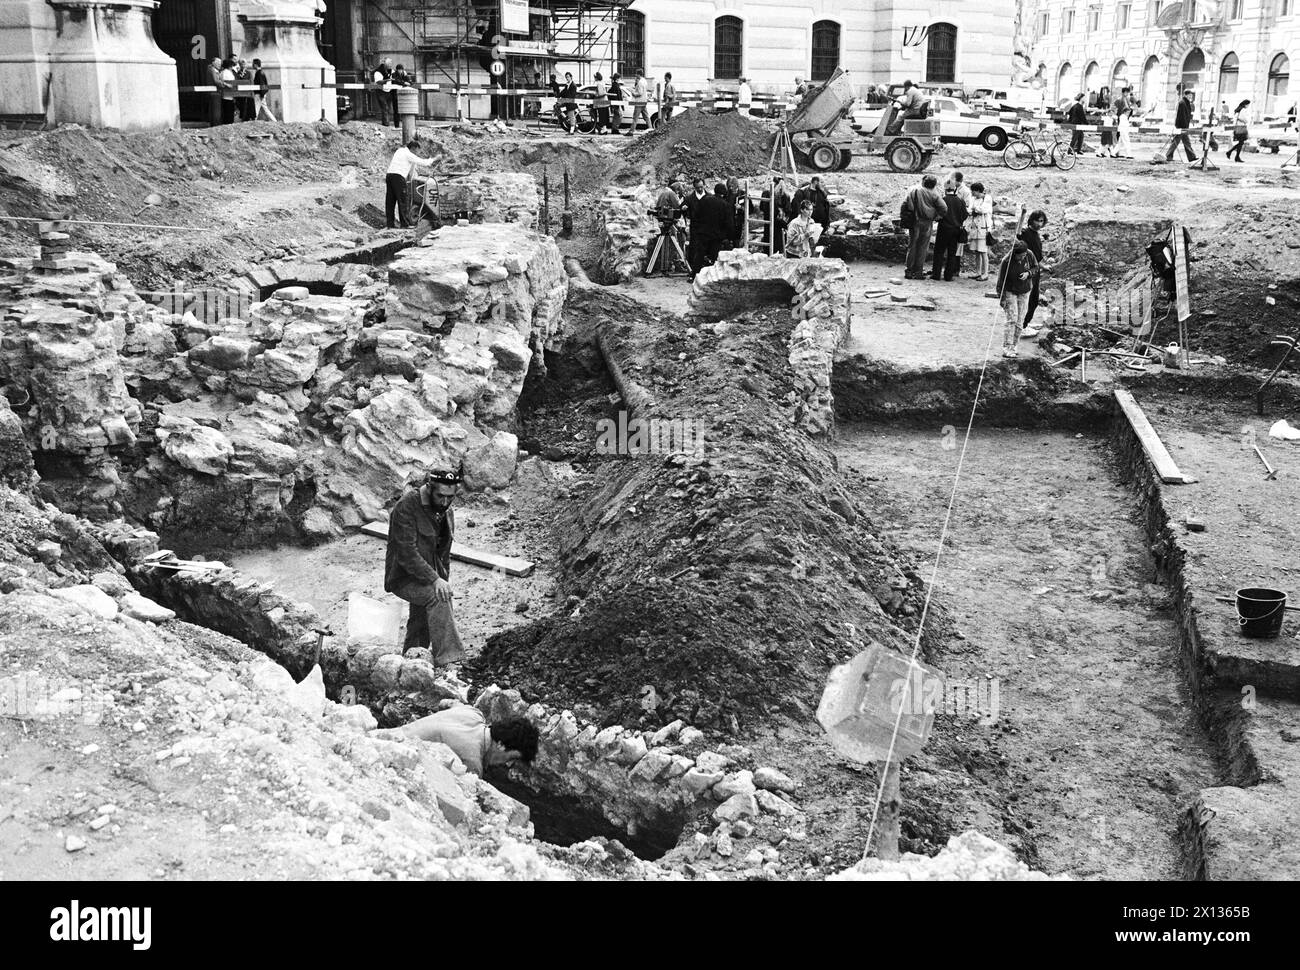 Vienne le 12 juin 1990 : pendant les travaux de construction de la Michaelerplatz de Vienne, des creuseurs ont fouillé les fondements de l'ancien théâtre latin. - 19900612 PD0008 - Rechteinfo : droits gérés (RM) Banque D'Images